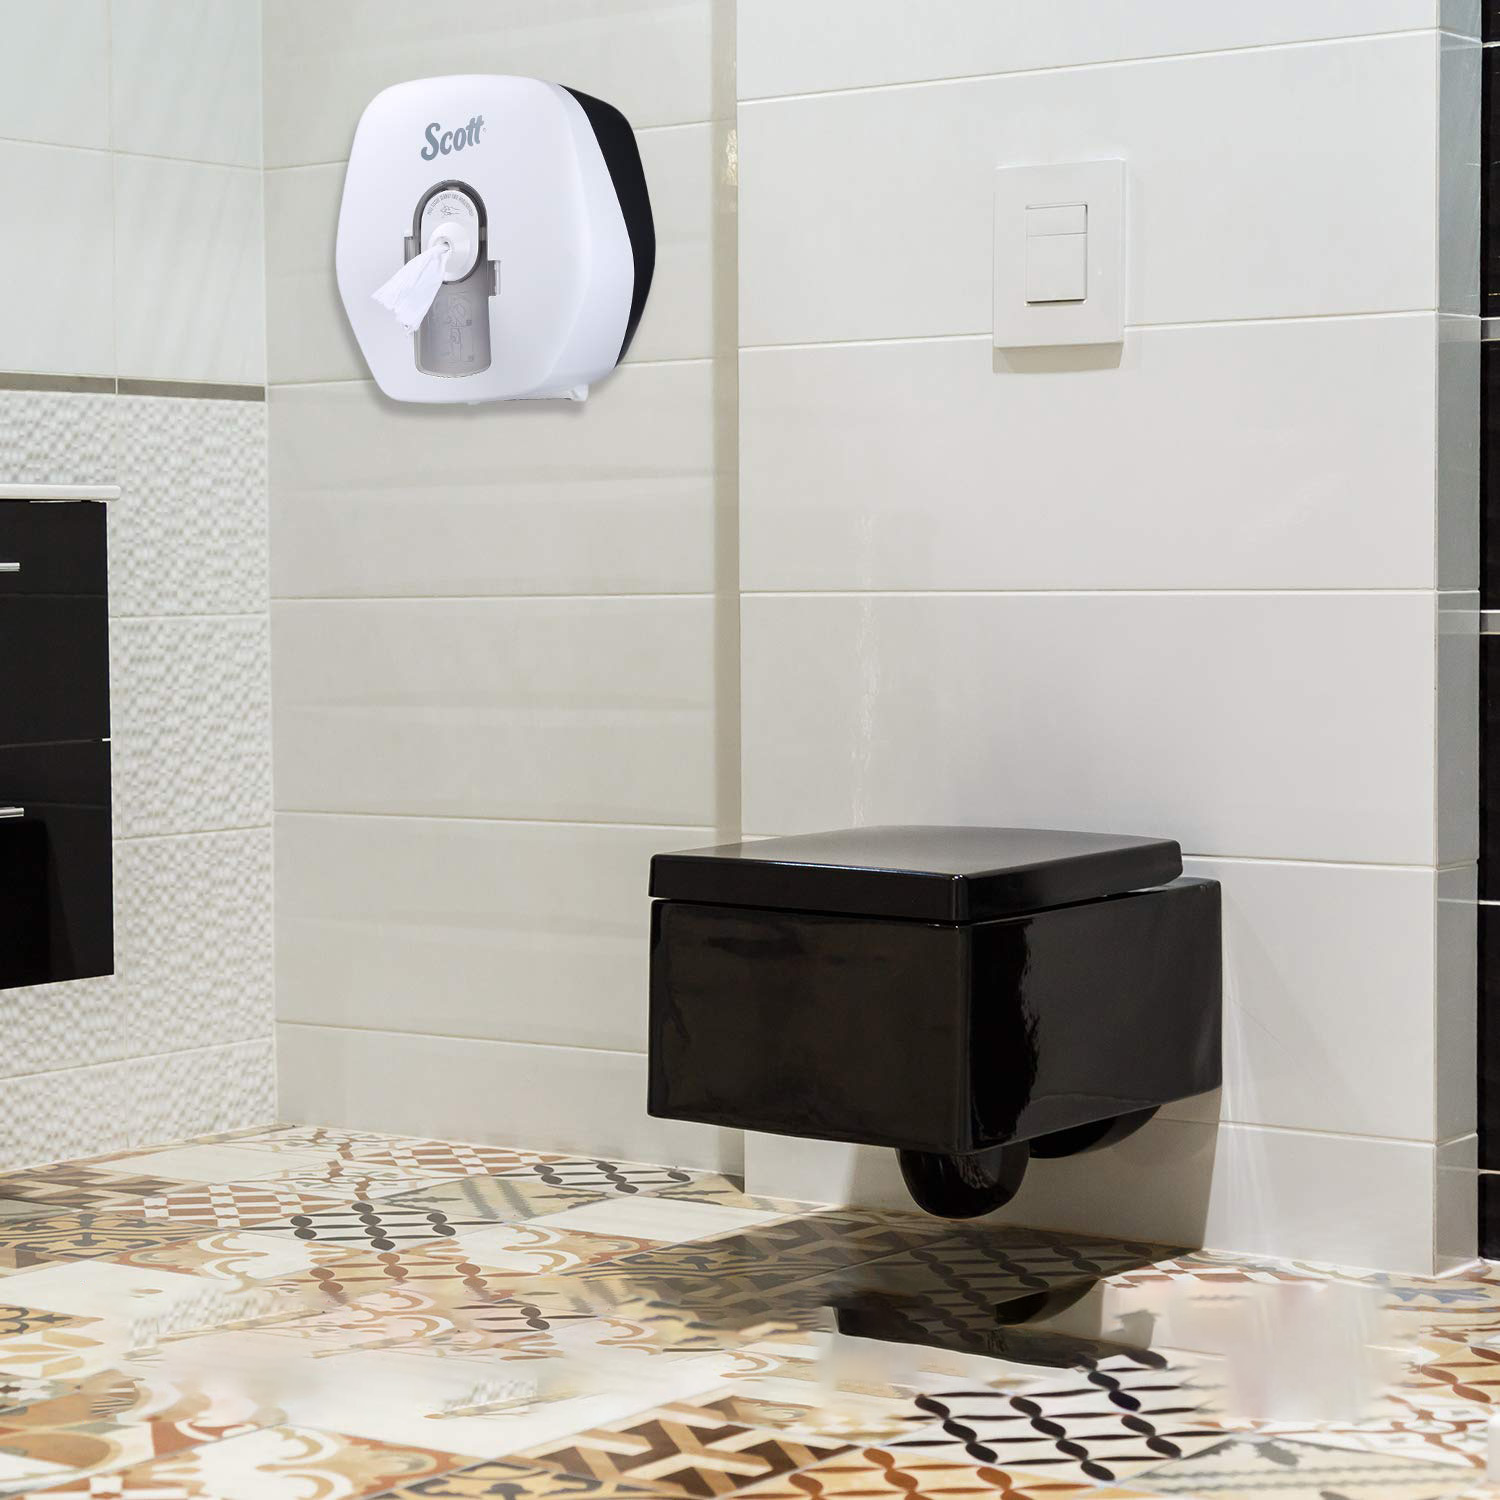 Scott® Centrepull Toilet Tissue Dispenser, 57204 (Pack of 1)